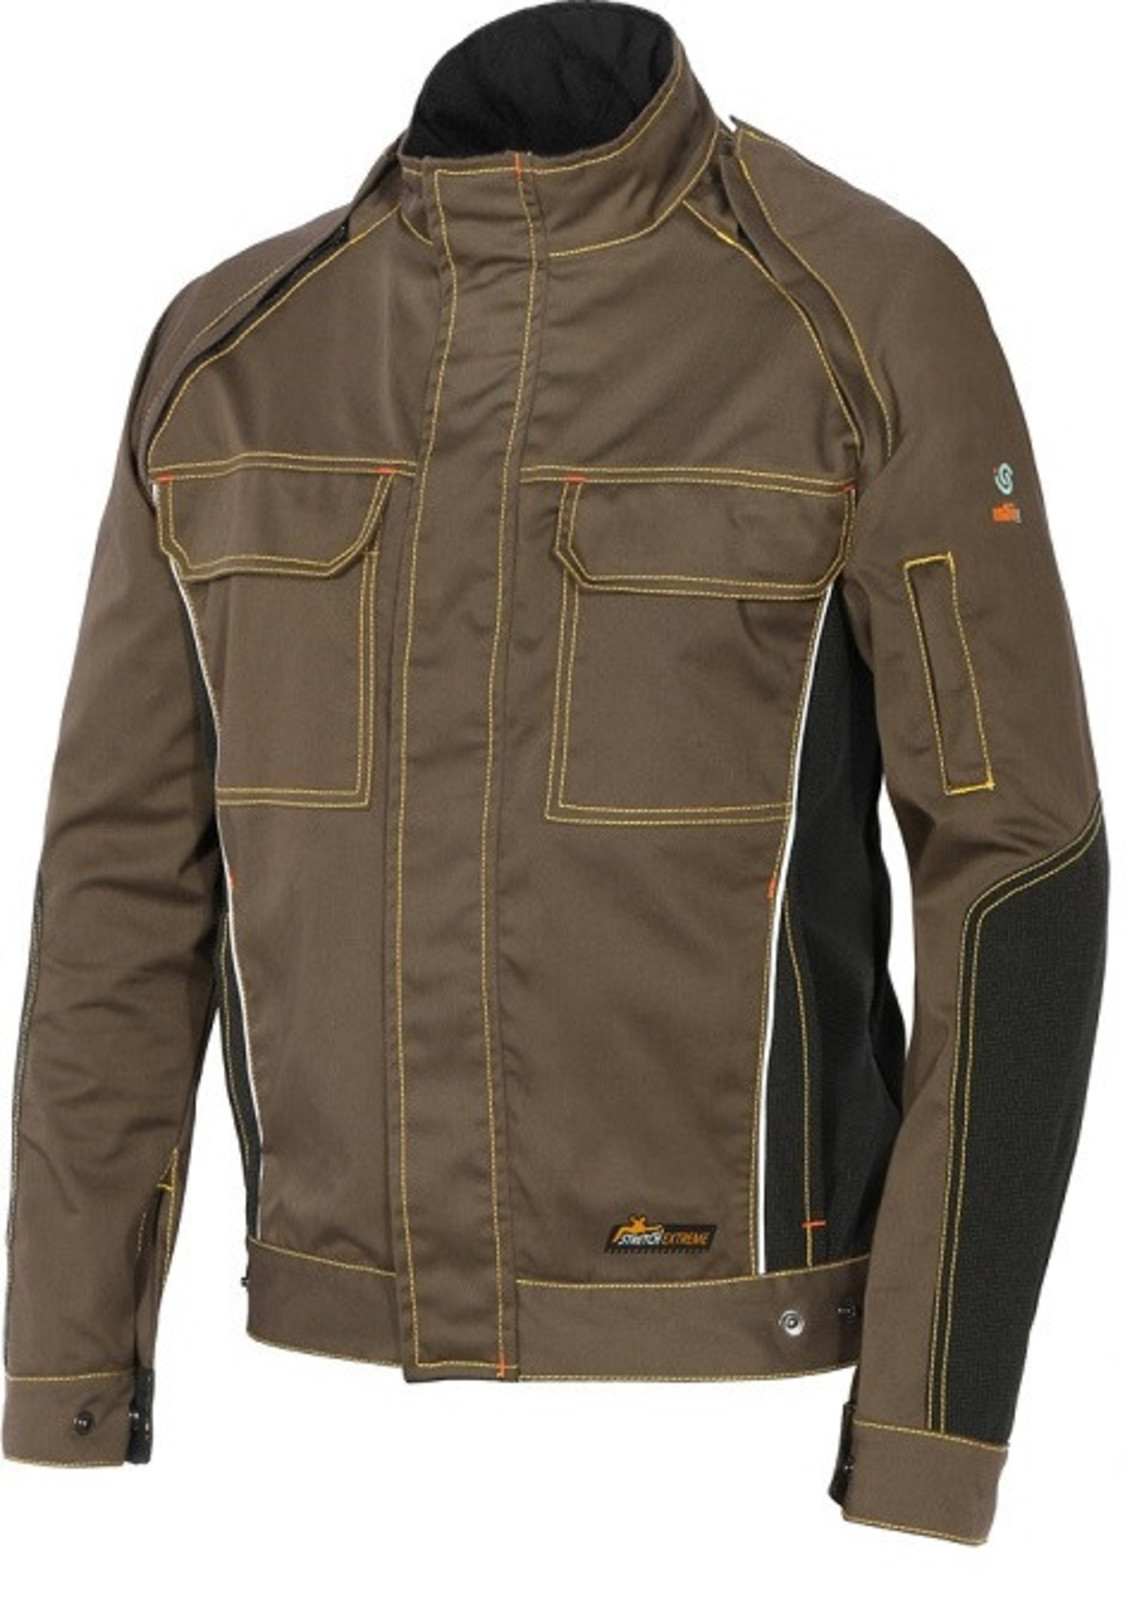 Strečová montérková bunda  ISSA Stretch Extreme 2v1 - veľkosť: S, farba: khaki